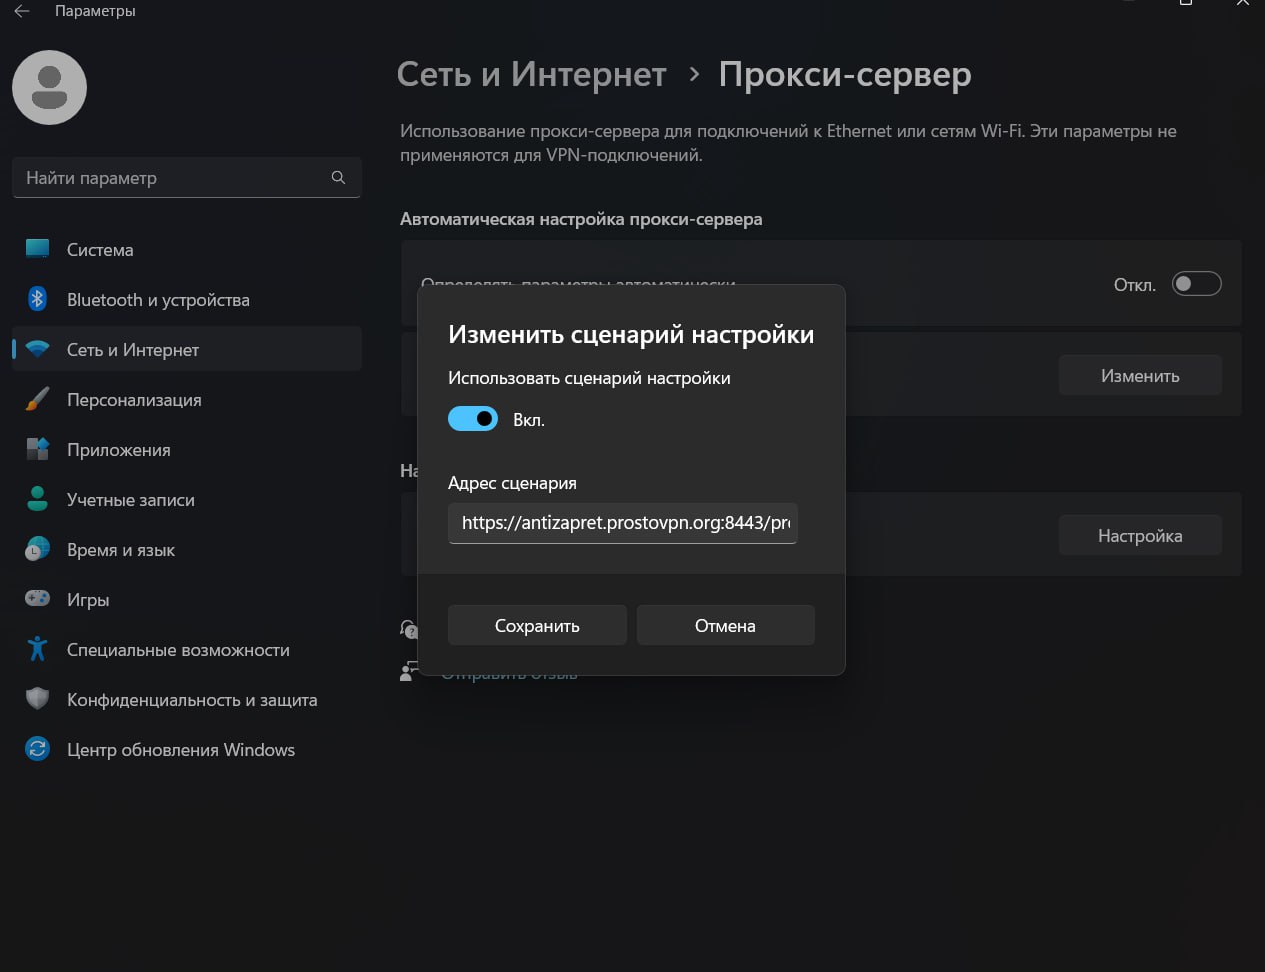 Steam в украине заблокирован или нет фото 48